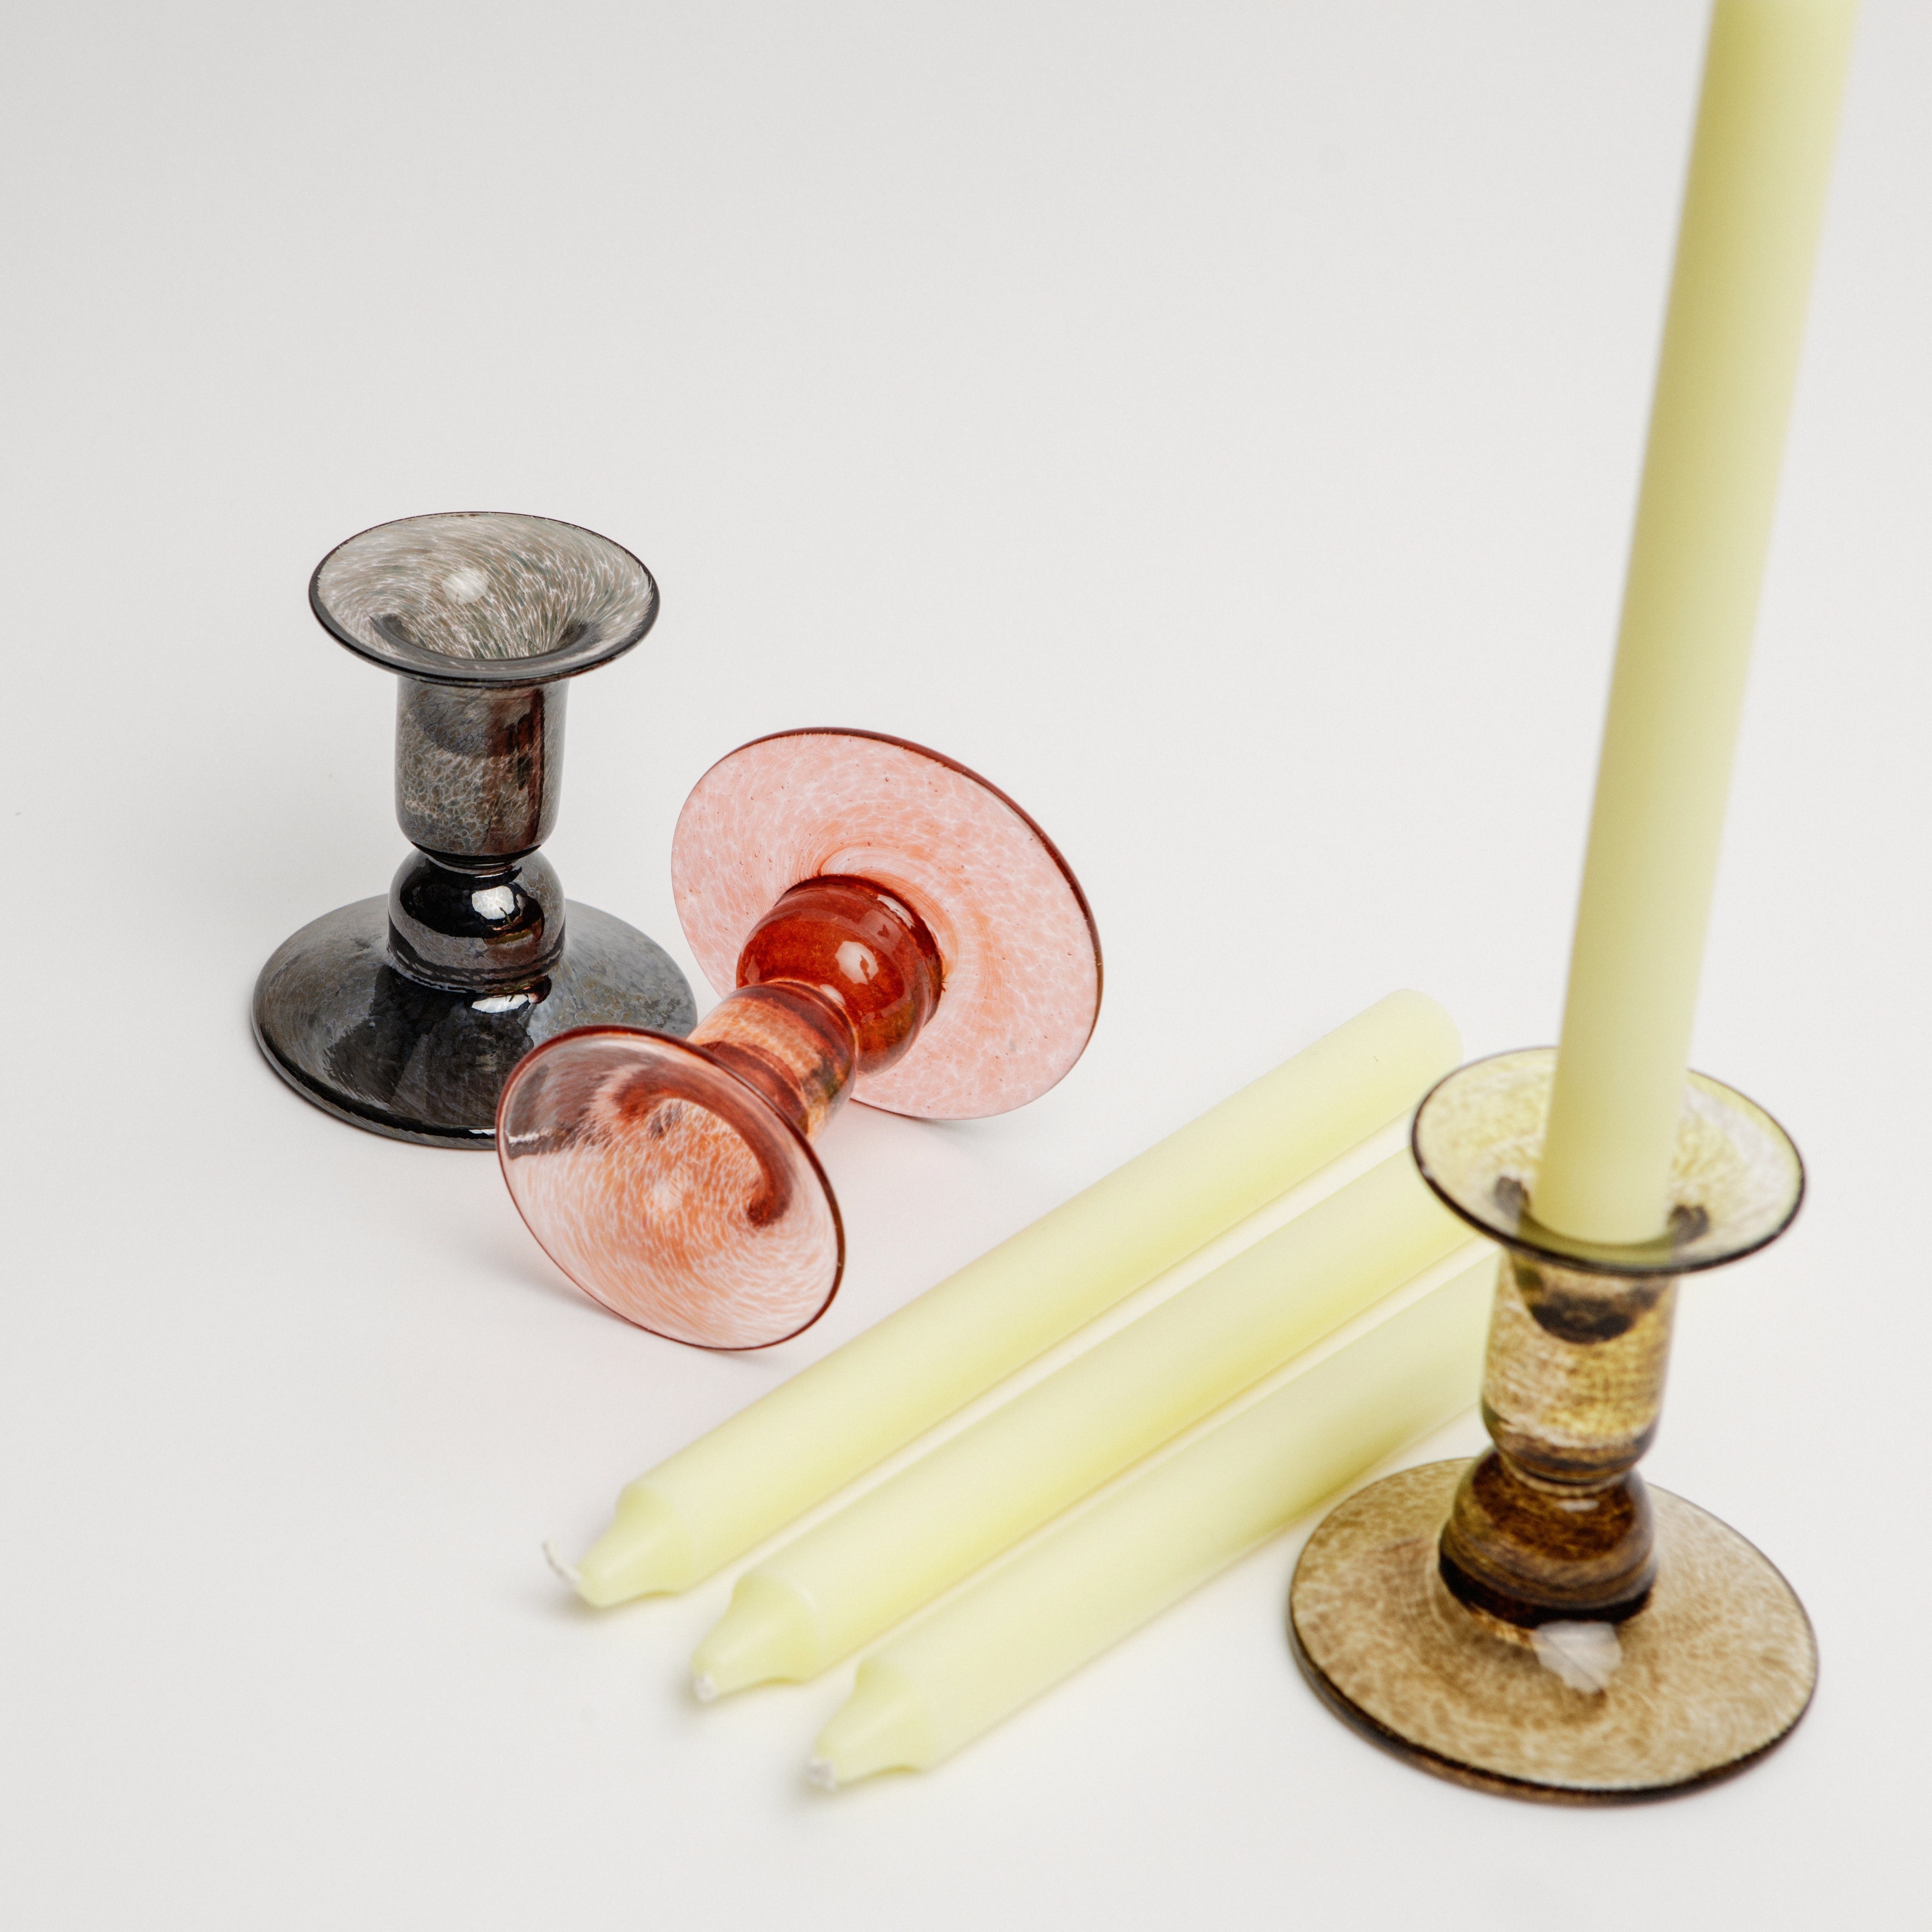 Glass Candlestick Holder